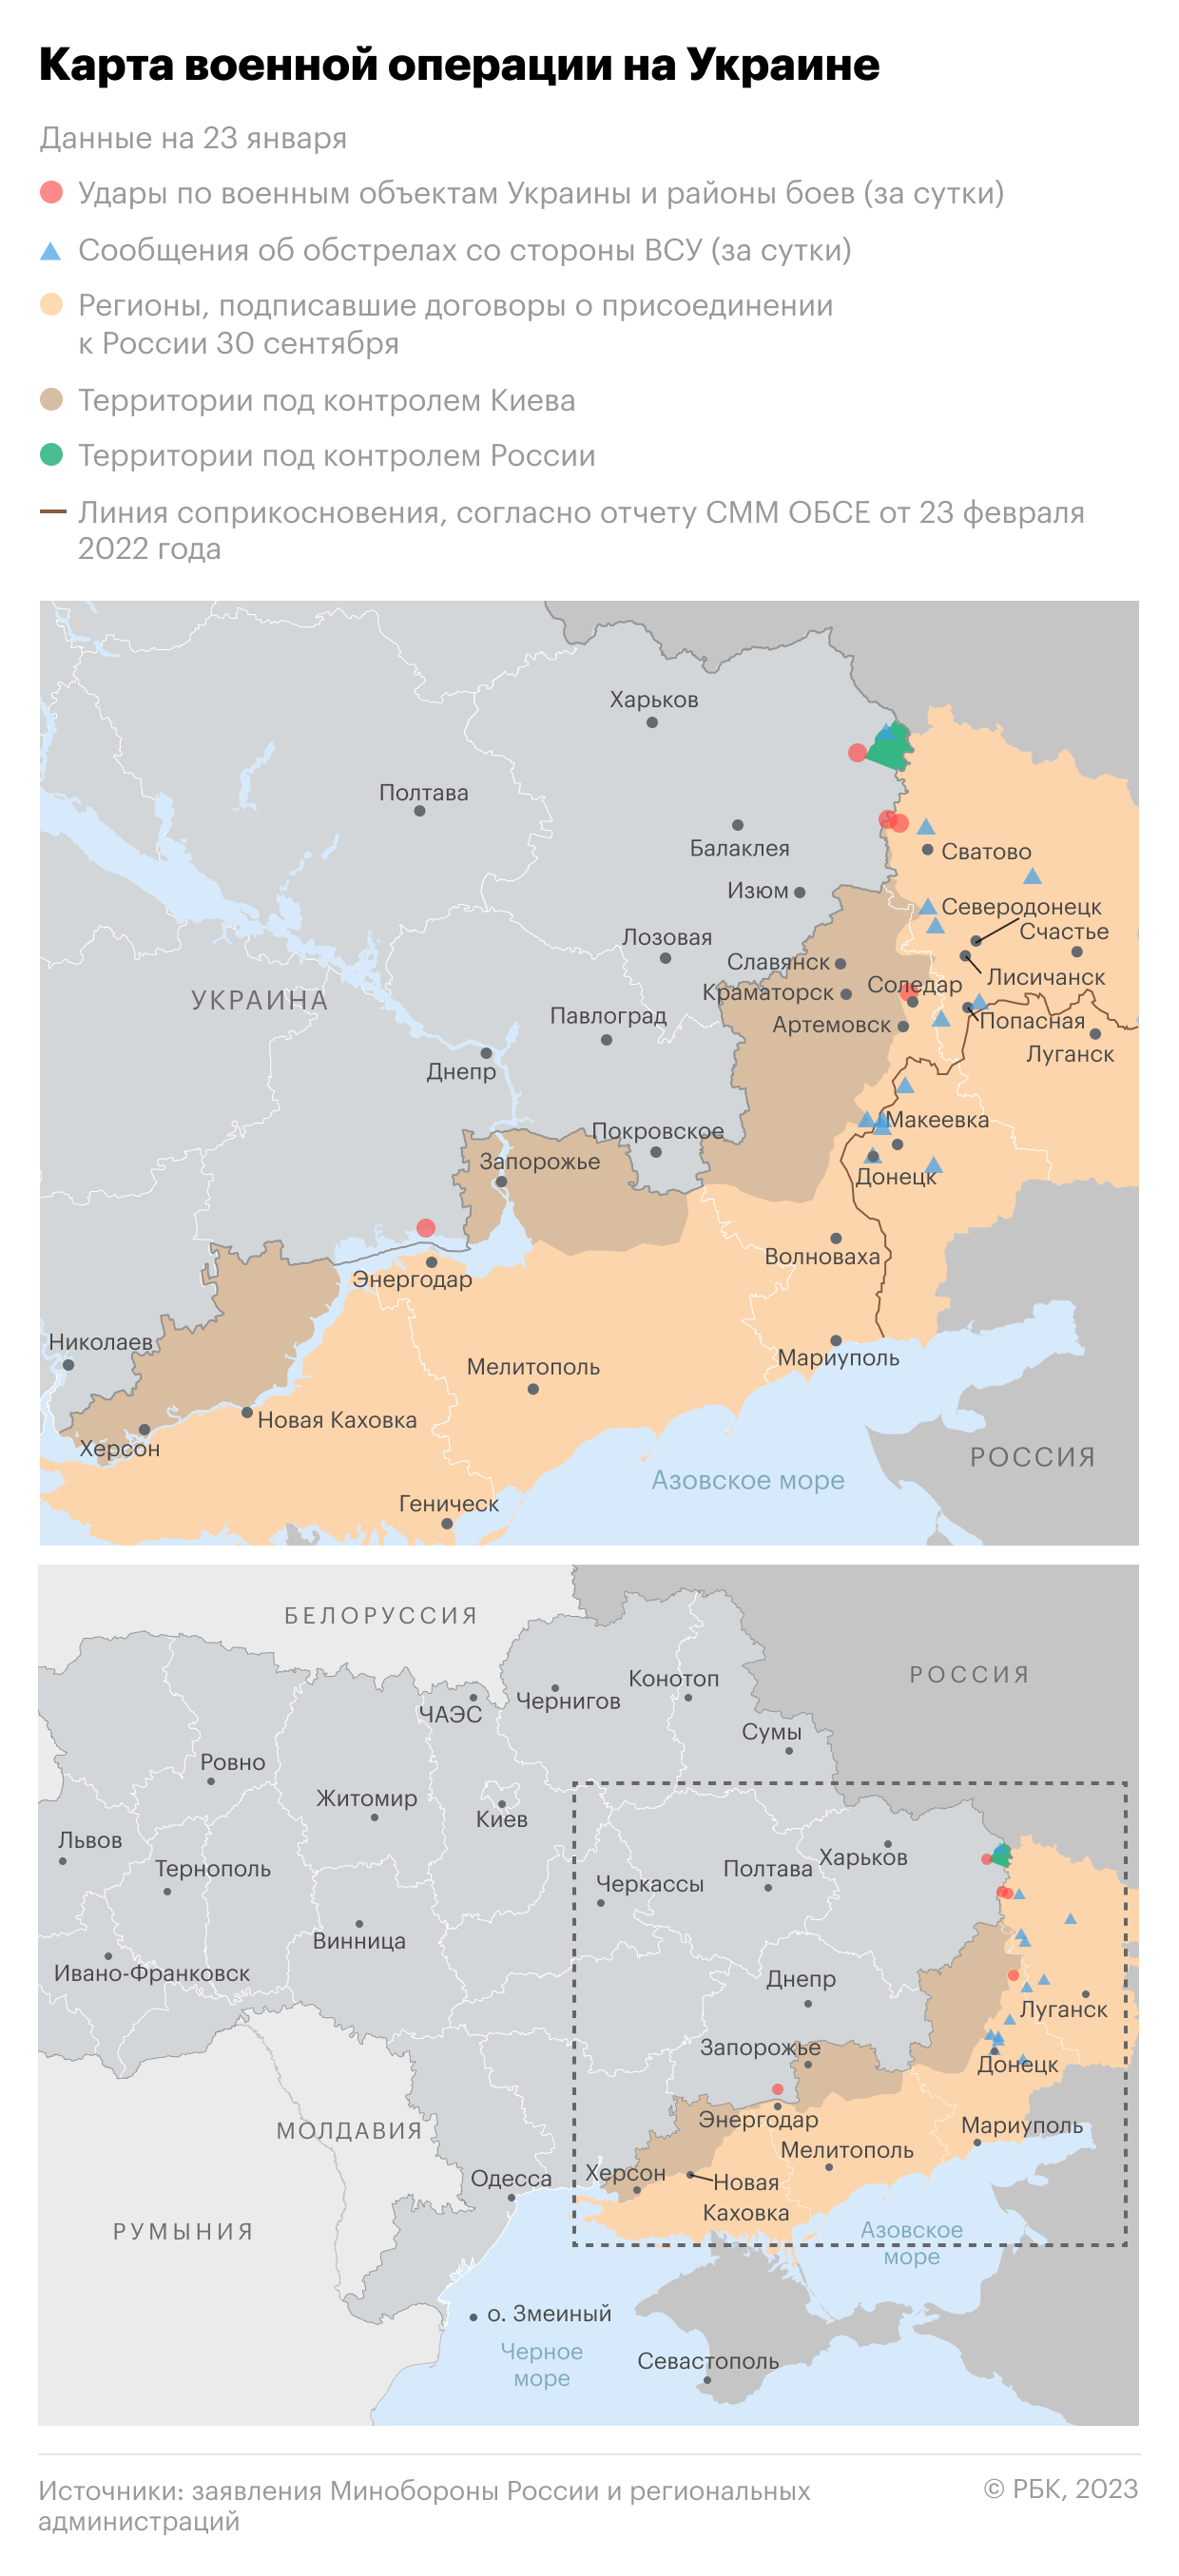 Рогов заявил о «вкрытии» армией позиций ВСУ в Запорожской области"/>













